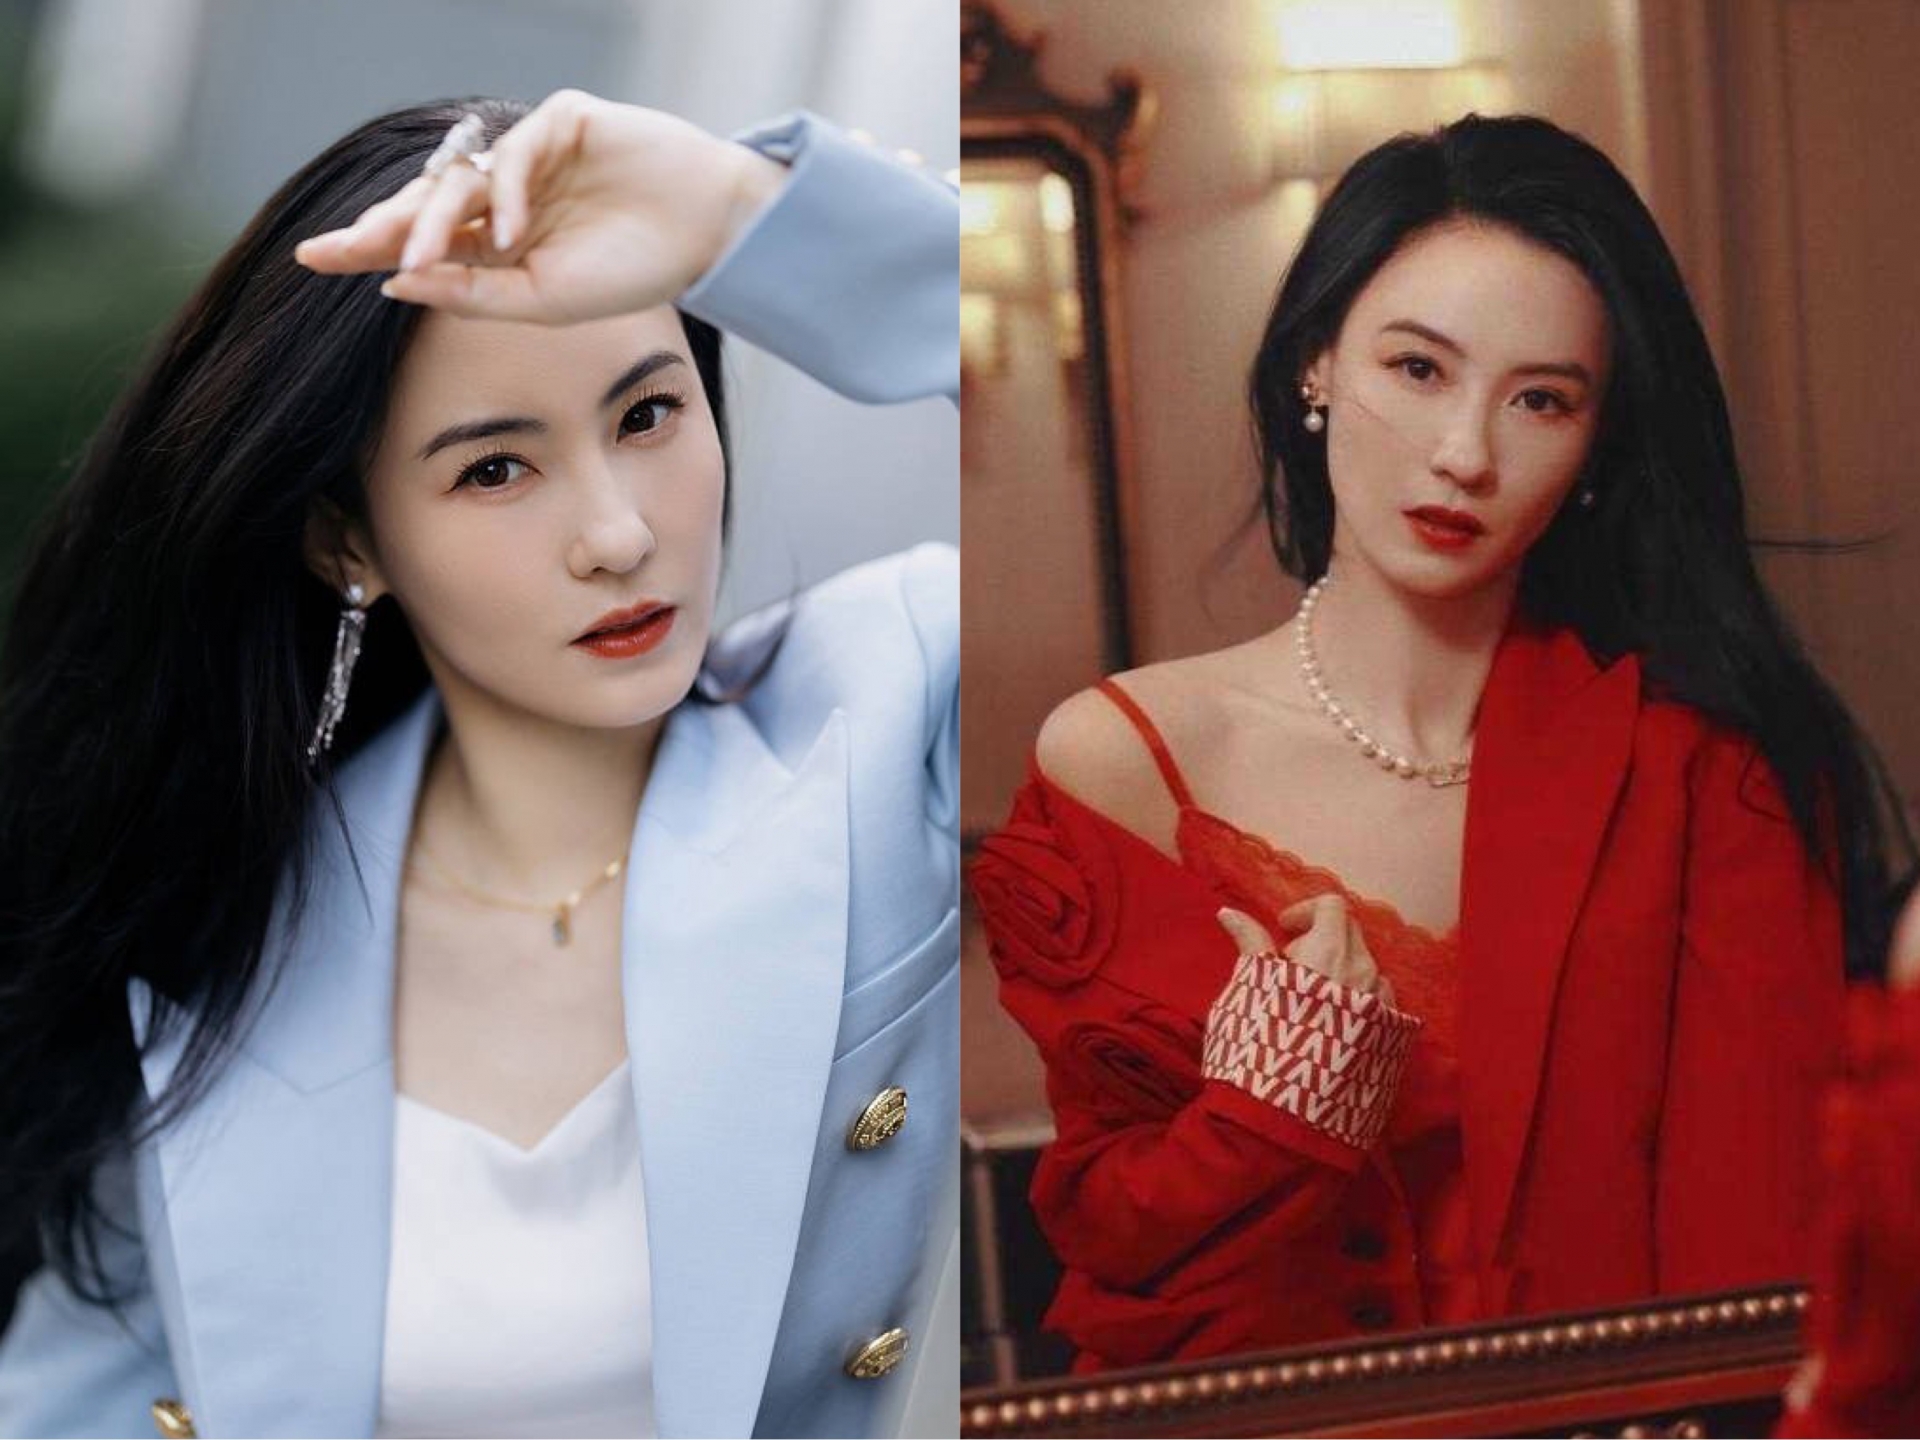 Ở tuổi 41, Trương Bá Chi ngày càng mặn mà và quyến rũ dù chẳng cần trang điểm cầu kì. Làn da trắng mịn cùng những đường nét thanh tú khiến nữ diễn viên toả sáng trong mọi khoảnh khắc.